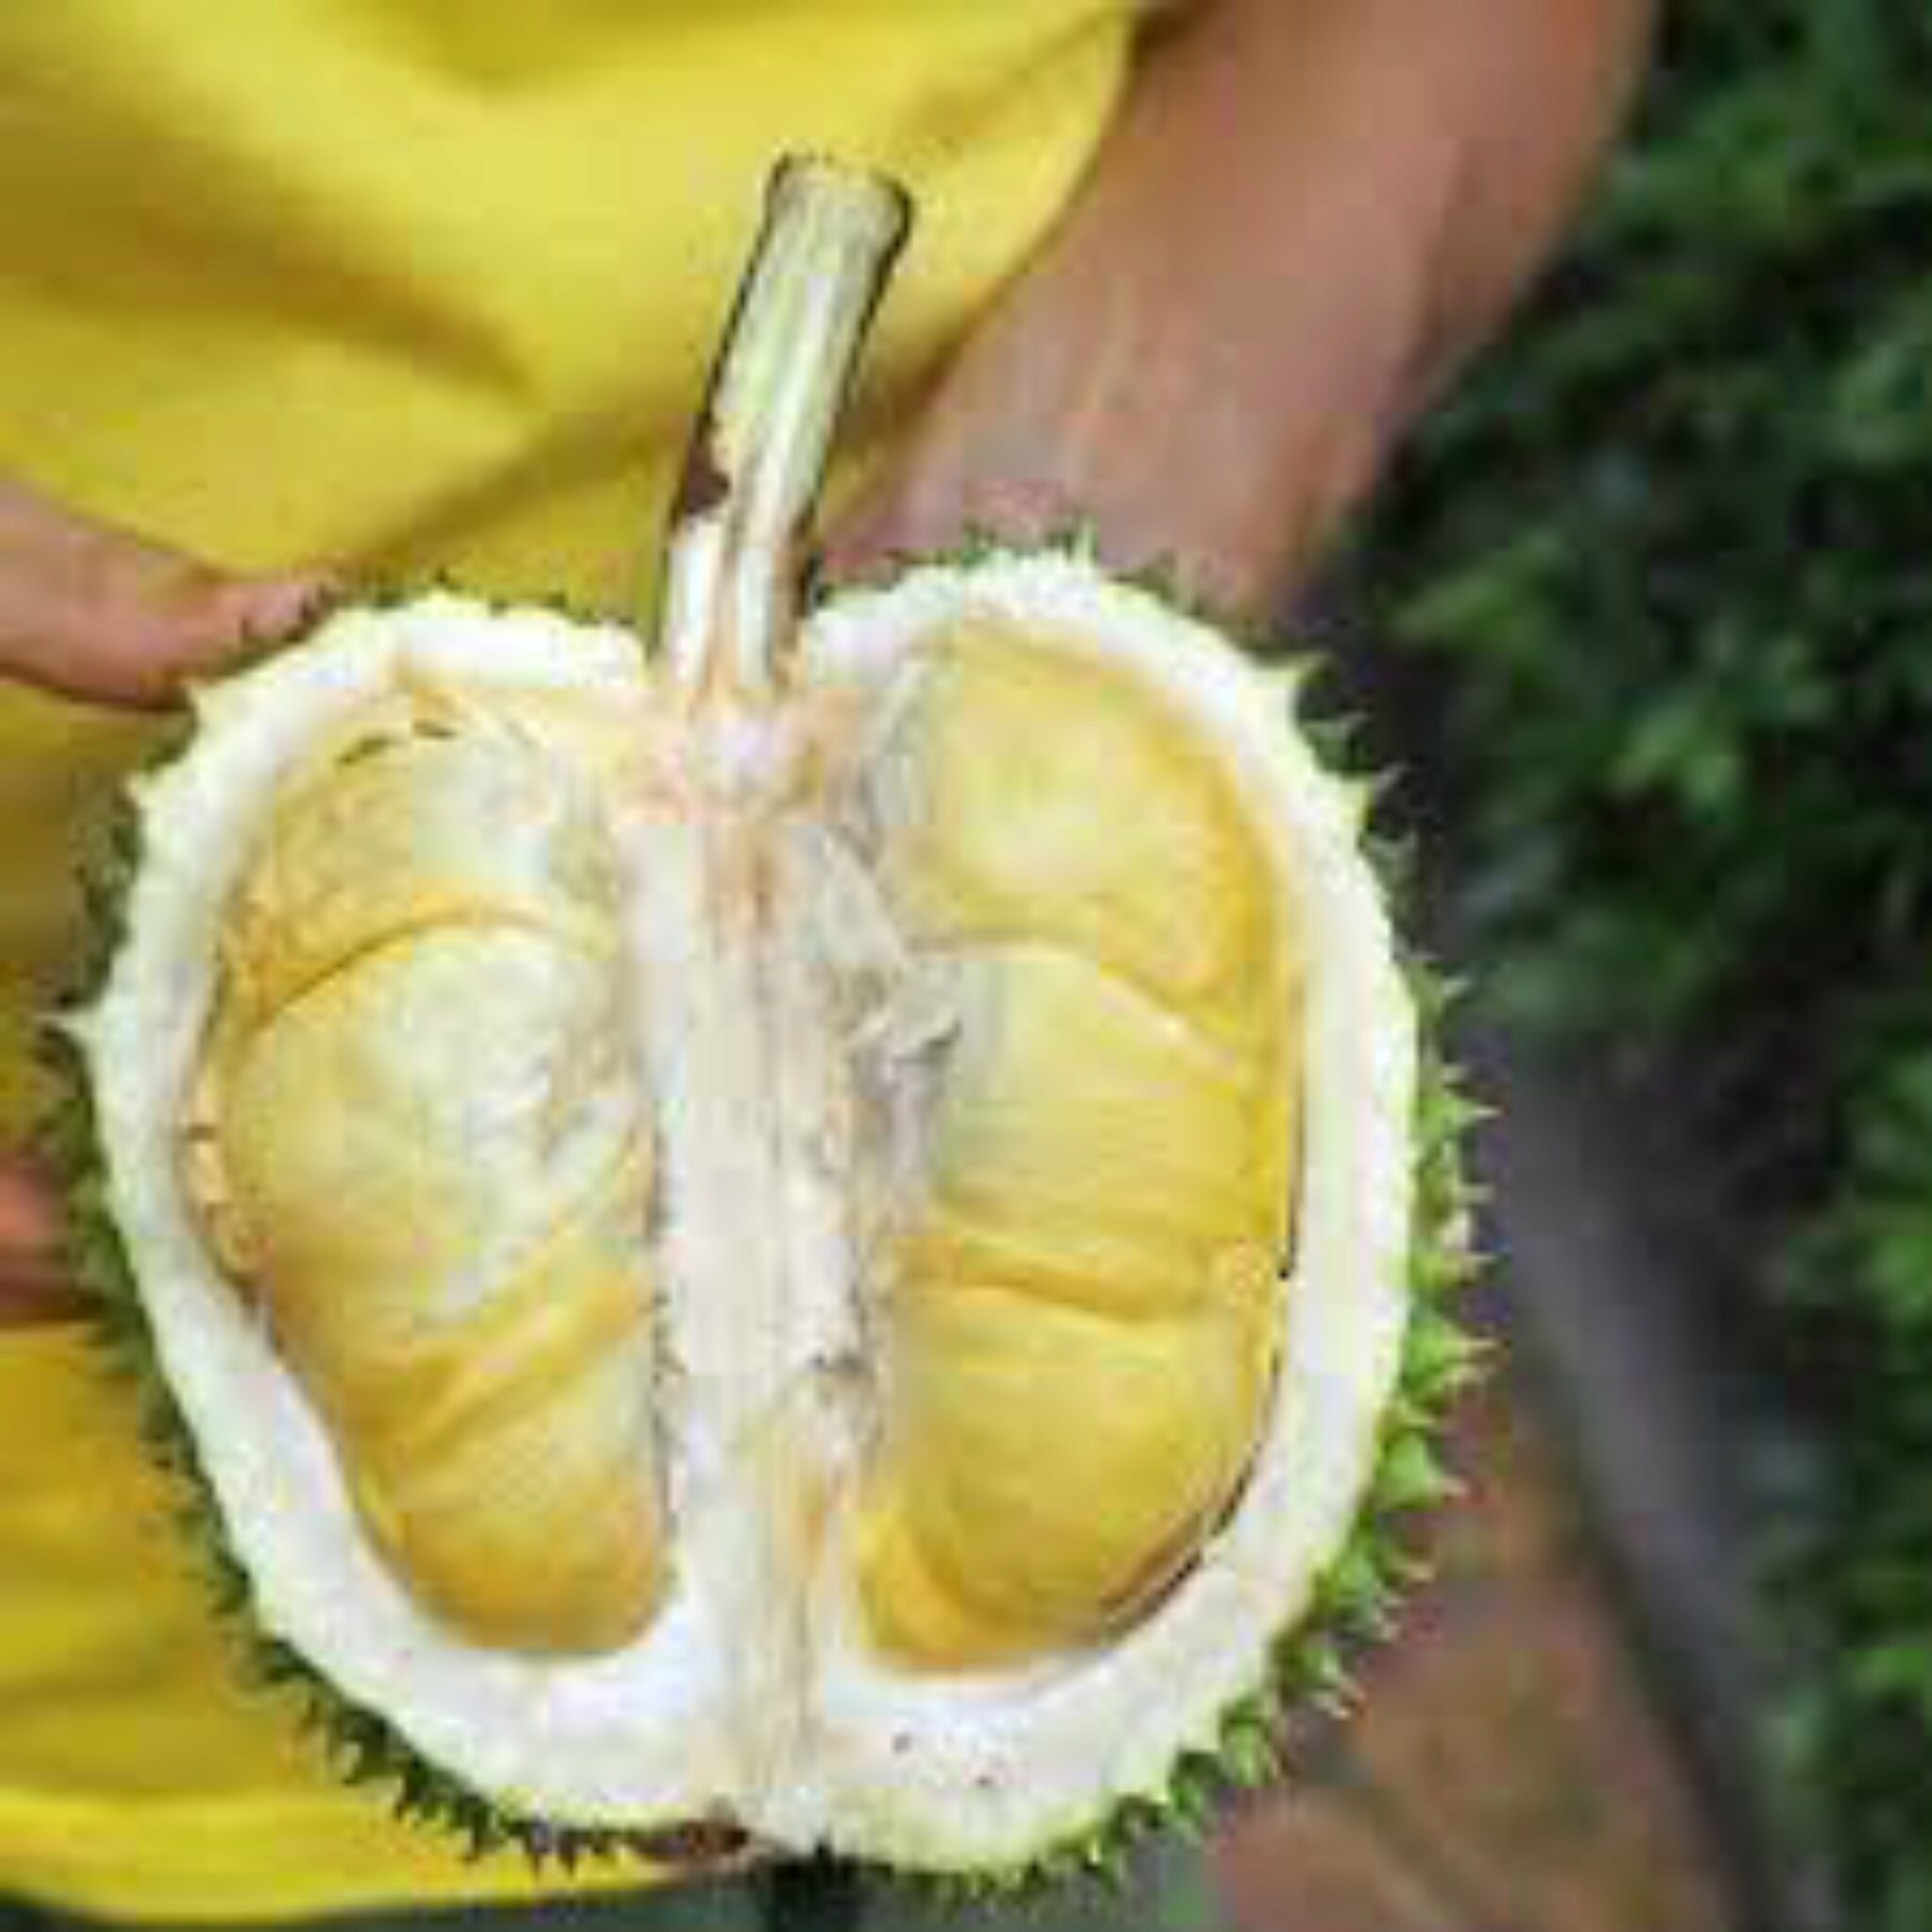 Les Chiens Peuvent ils Manger Du Durian Voici Ce Que Vous Devez Savoir